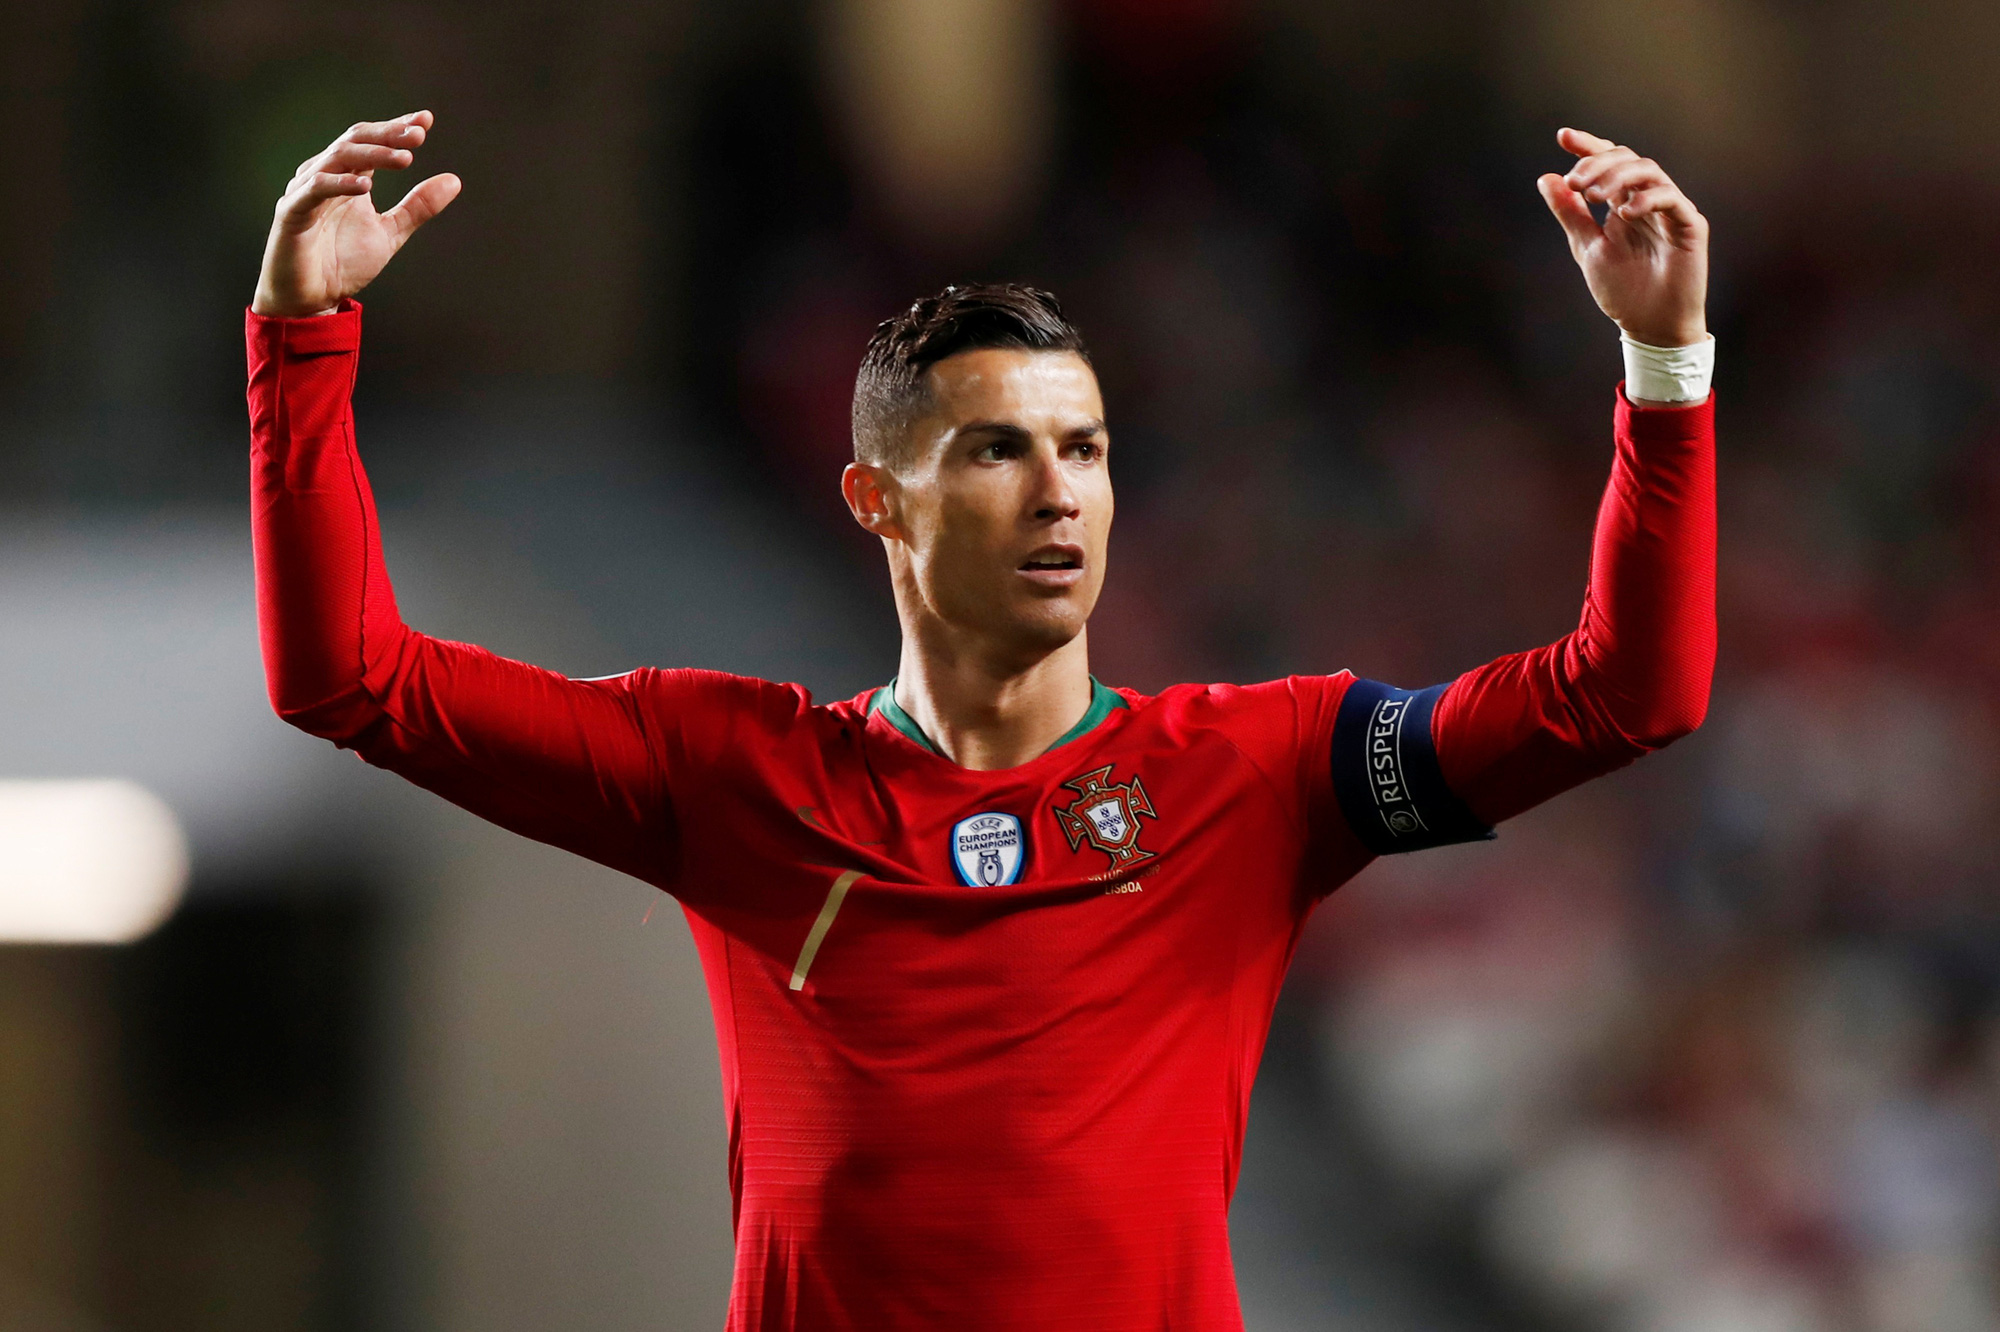 Ronaldo đưa ra đề xuất cực hay, giúp quyên góp số tiền lớn cho các cầu thủ gặp khó giữa mùa dịch Covid-19 - Ảnh 1.